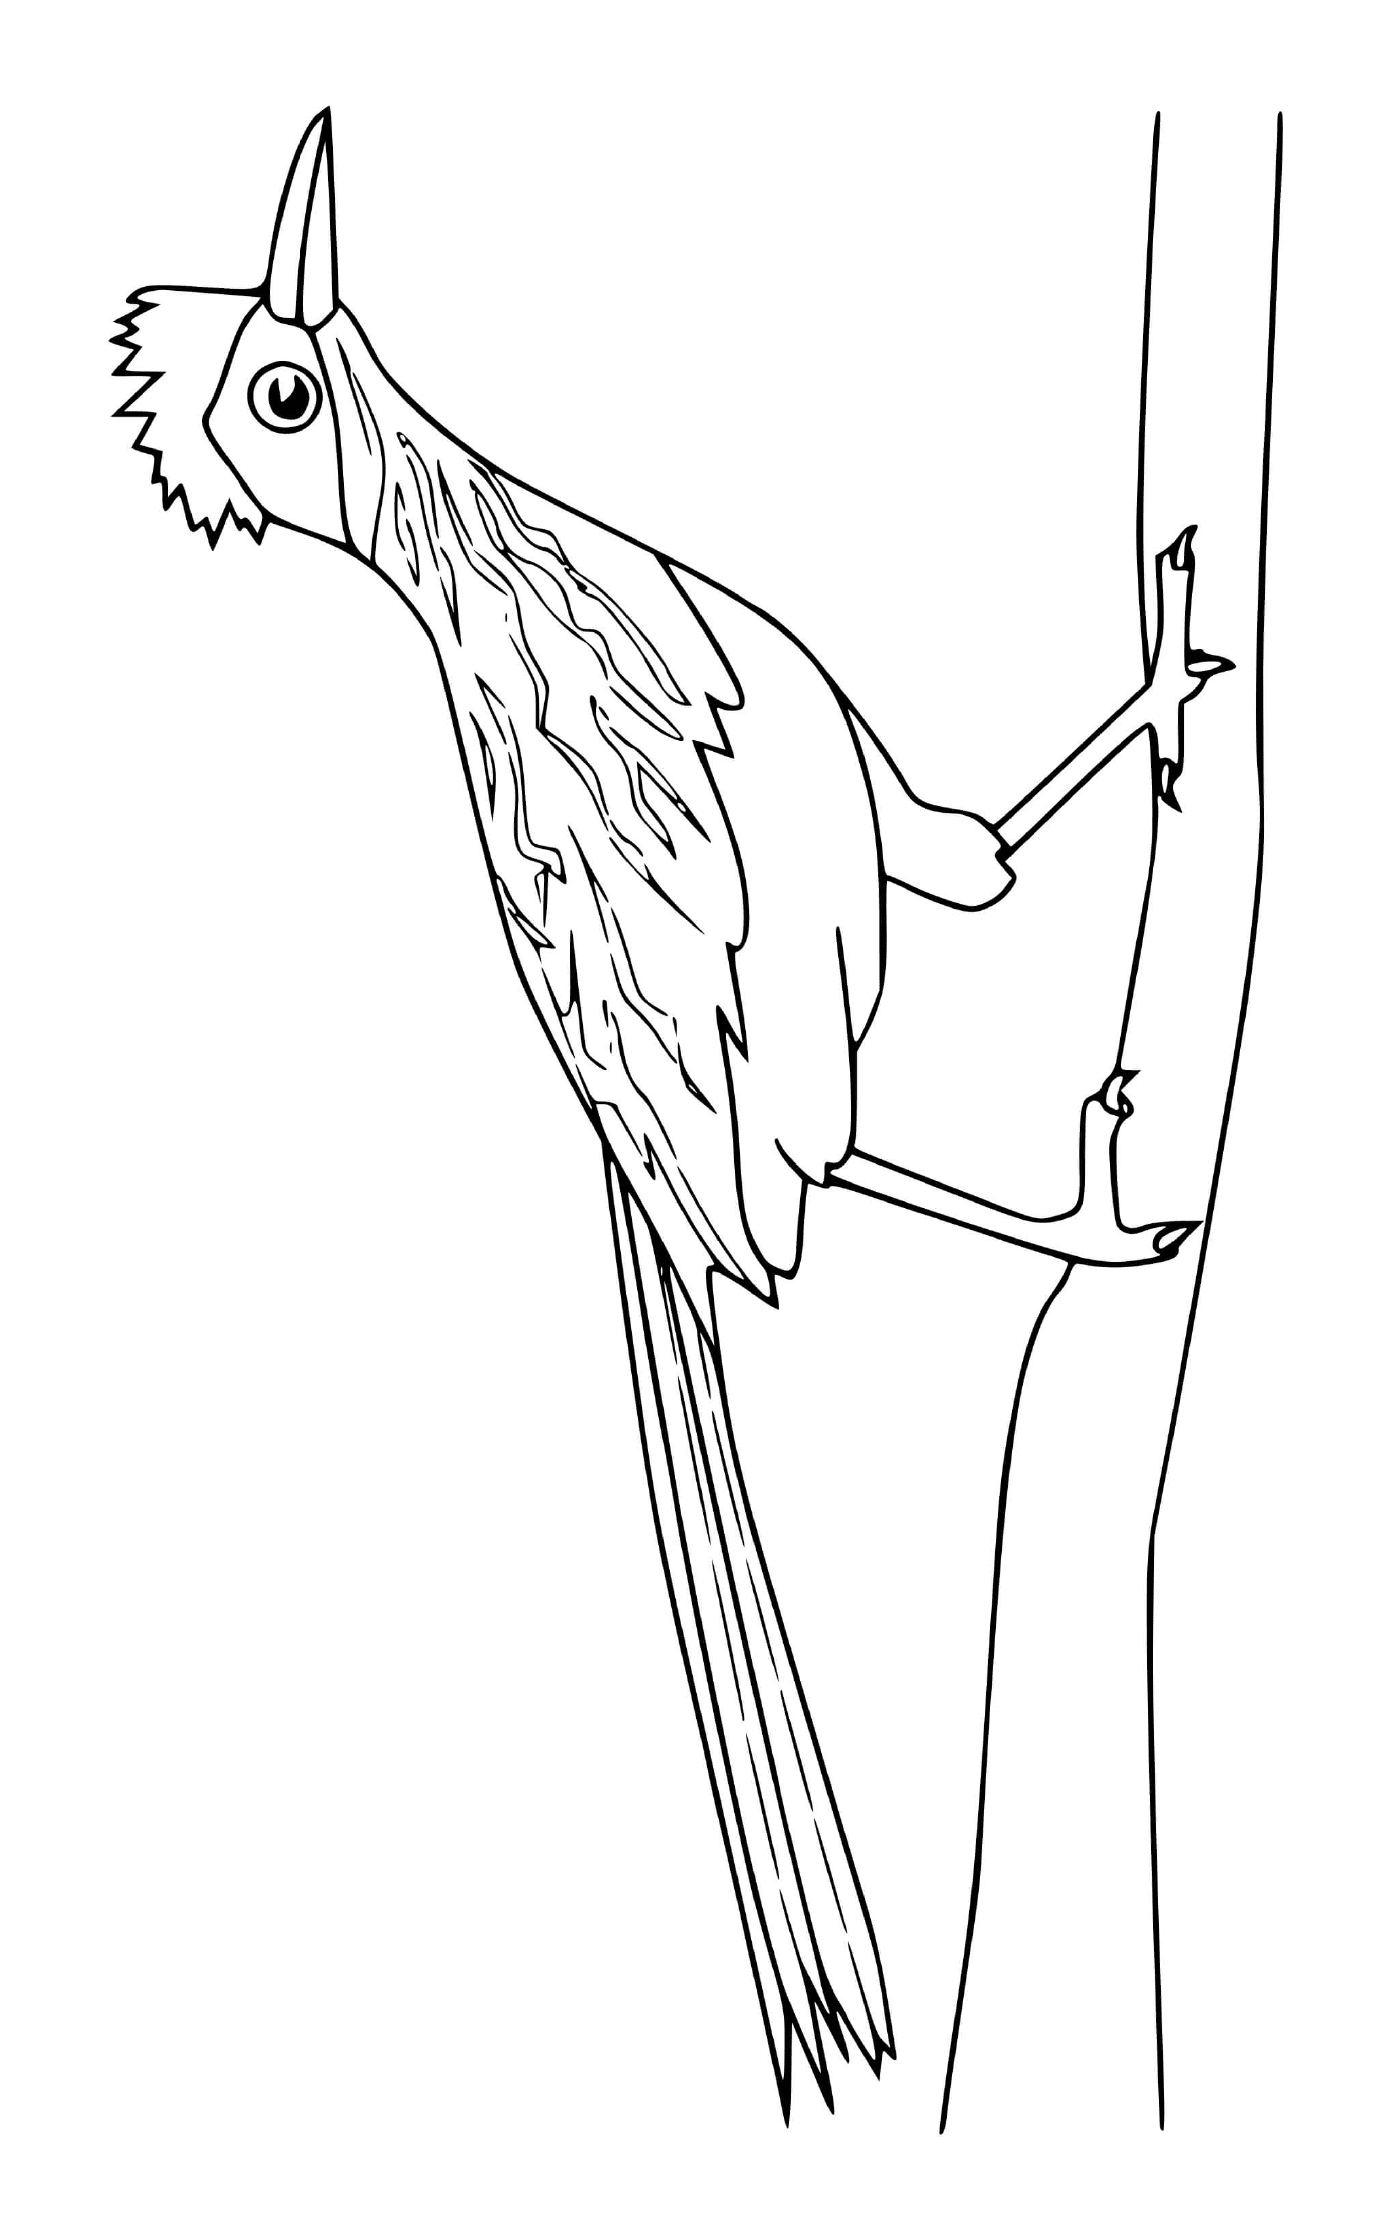  pájaro posado en una rama de árbol 